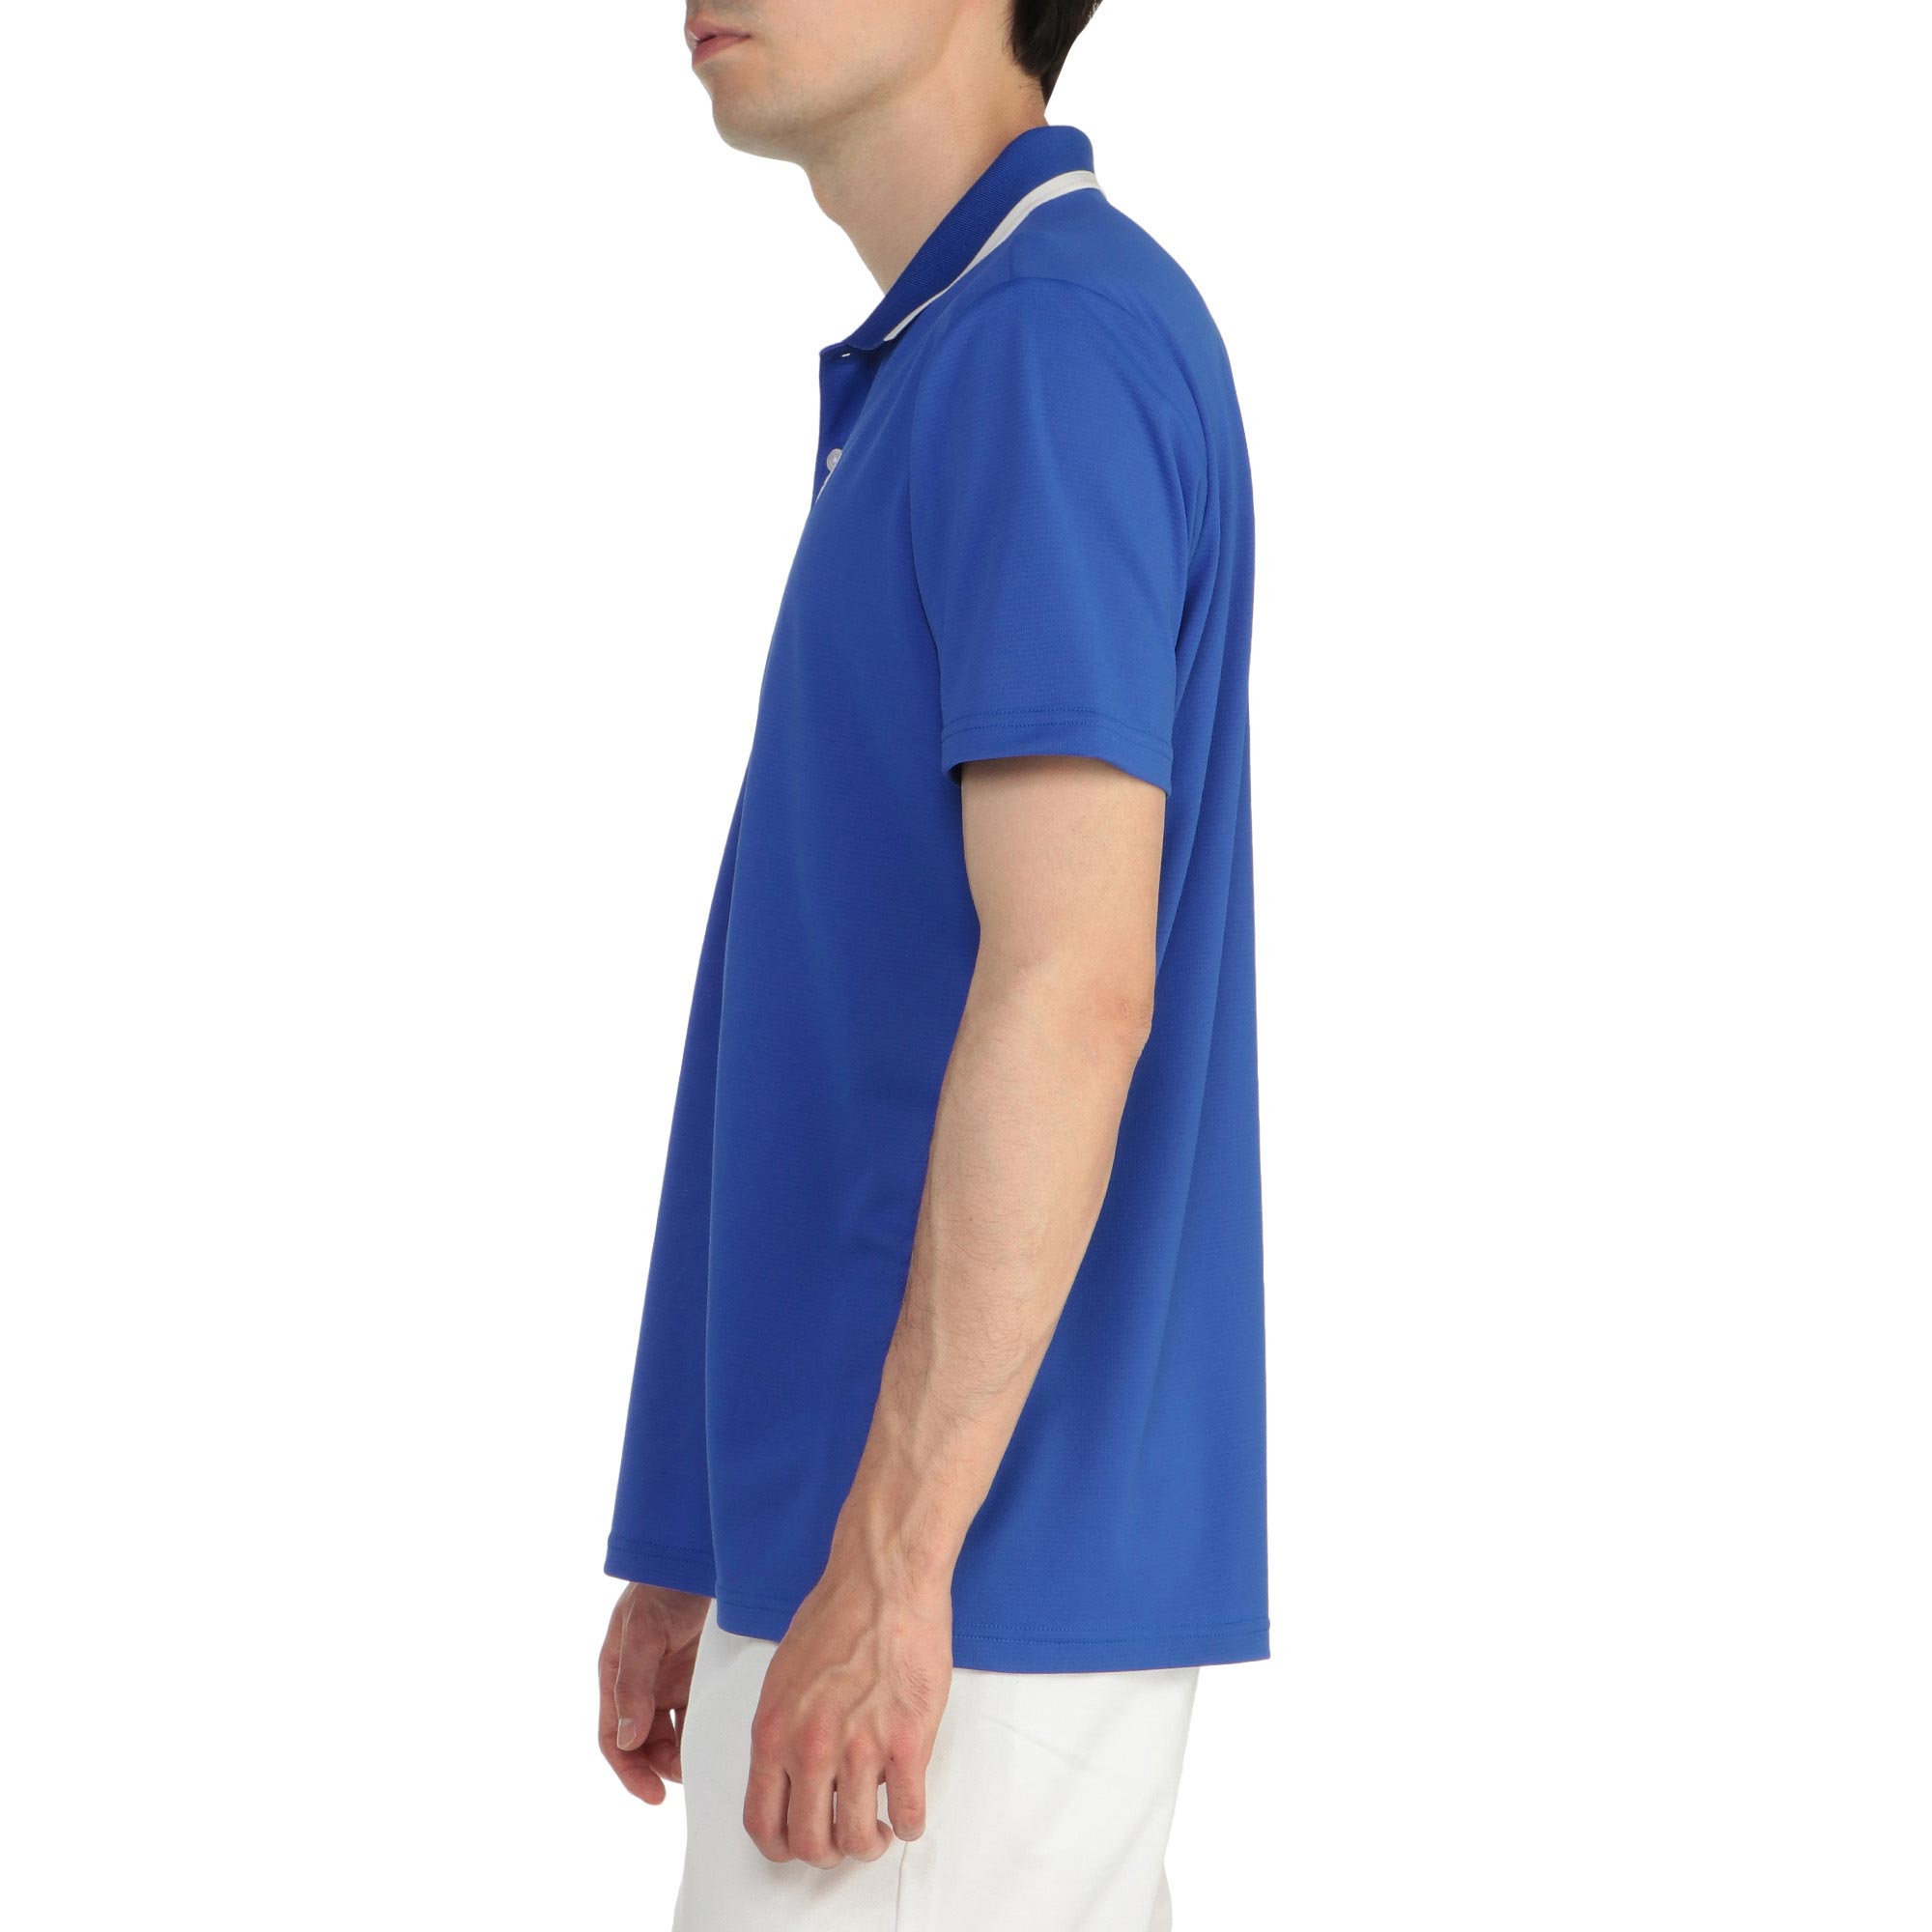 半袖ポロ衿シャツ[メンズ]|E2MA2015|半袖シャツ|ゴルフウエア